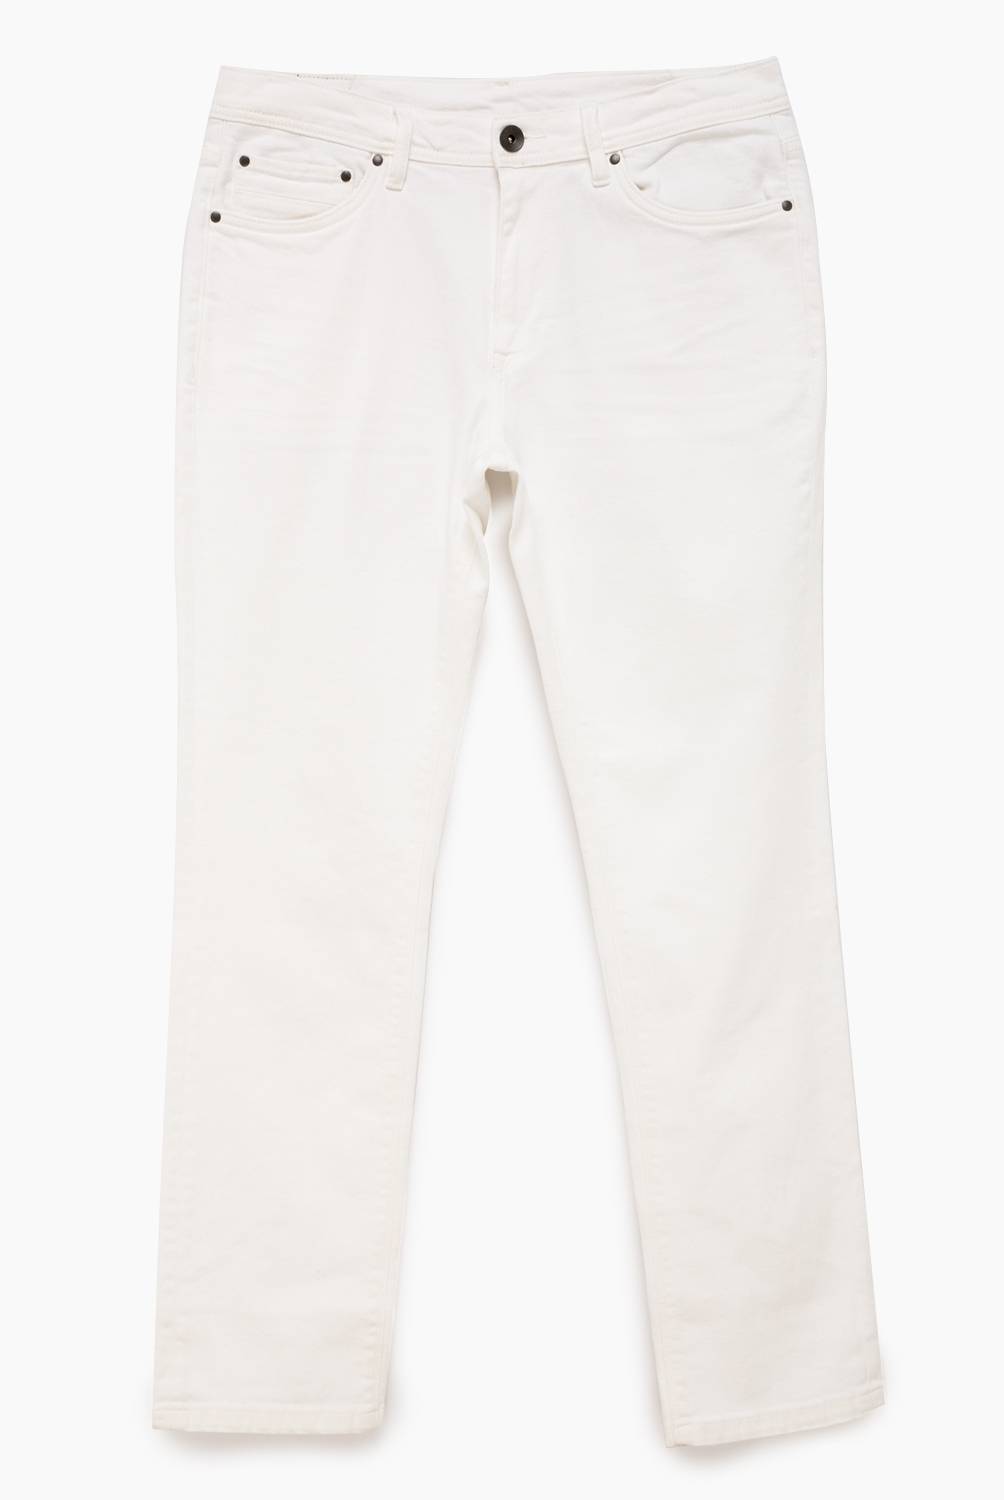 LA MARTINA - Jeans Casual Regular Fit